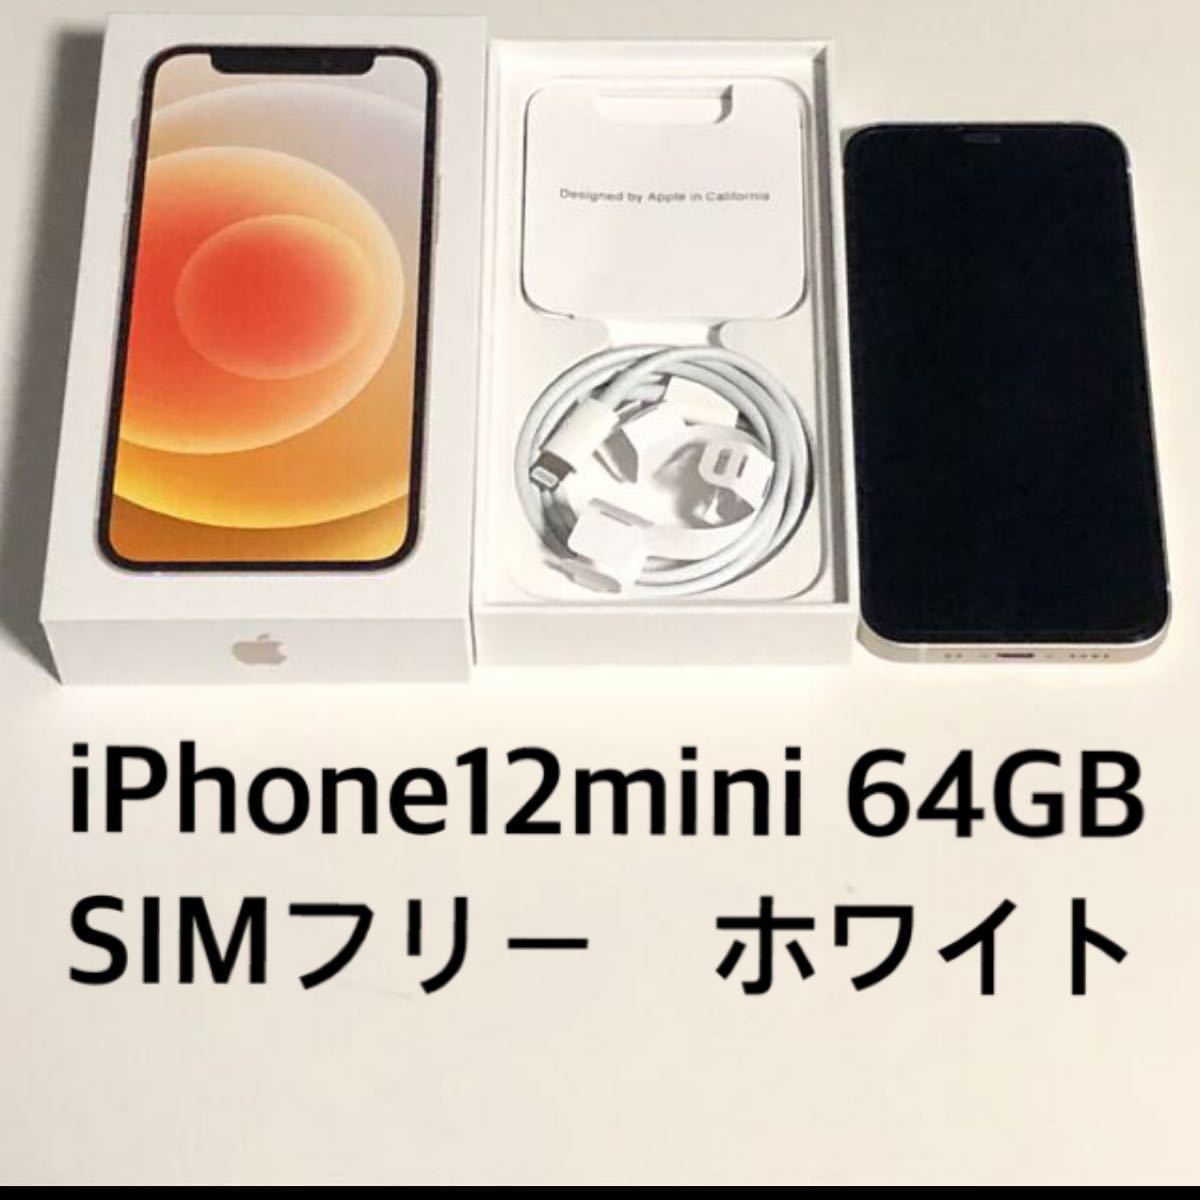 [値下げ]iPhone 12mini 64GB SIMロック解除済 スマートフォン本体 ブランドのアイテムを公式に取扱